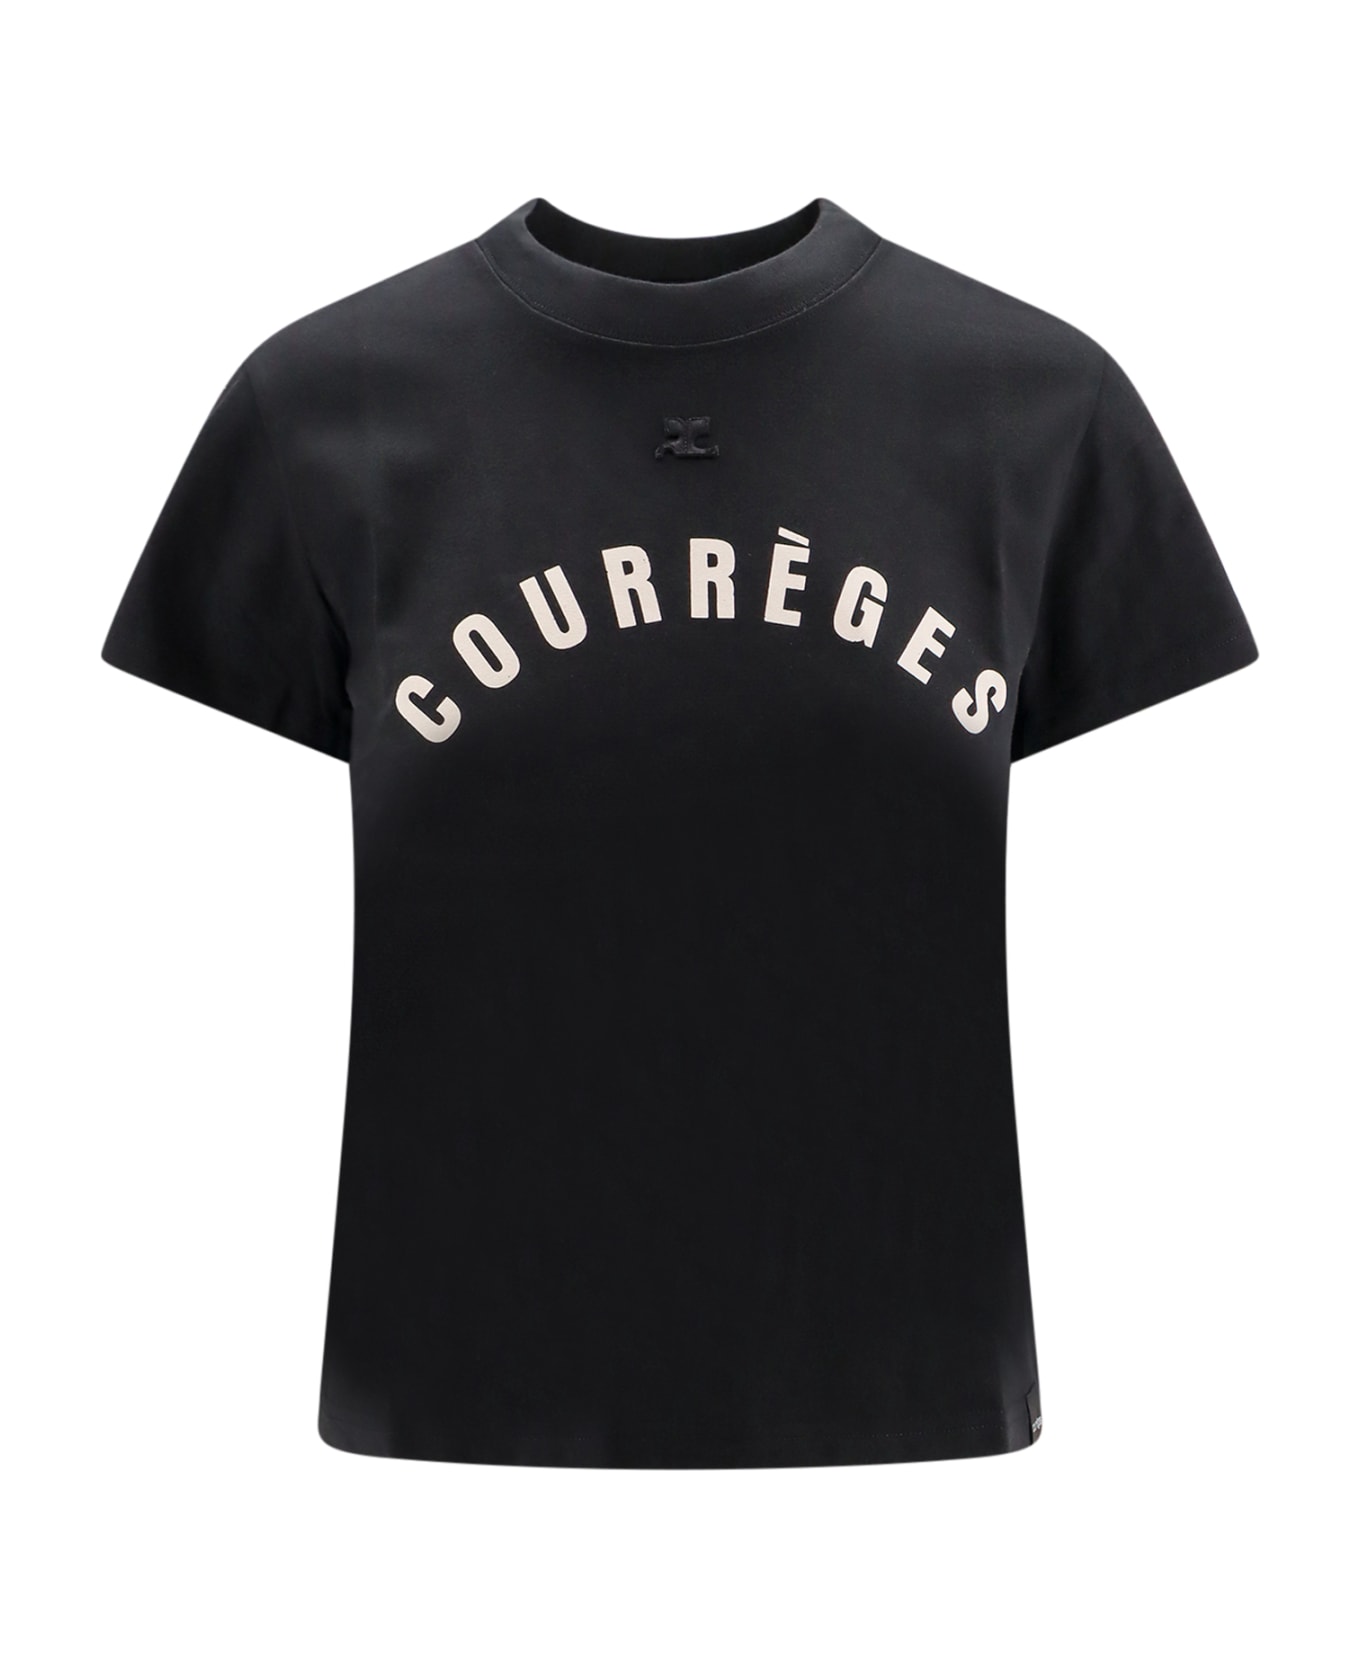 Courrèges T-shirt - Black Tシャツ